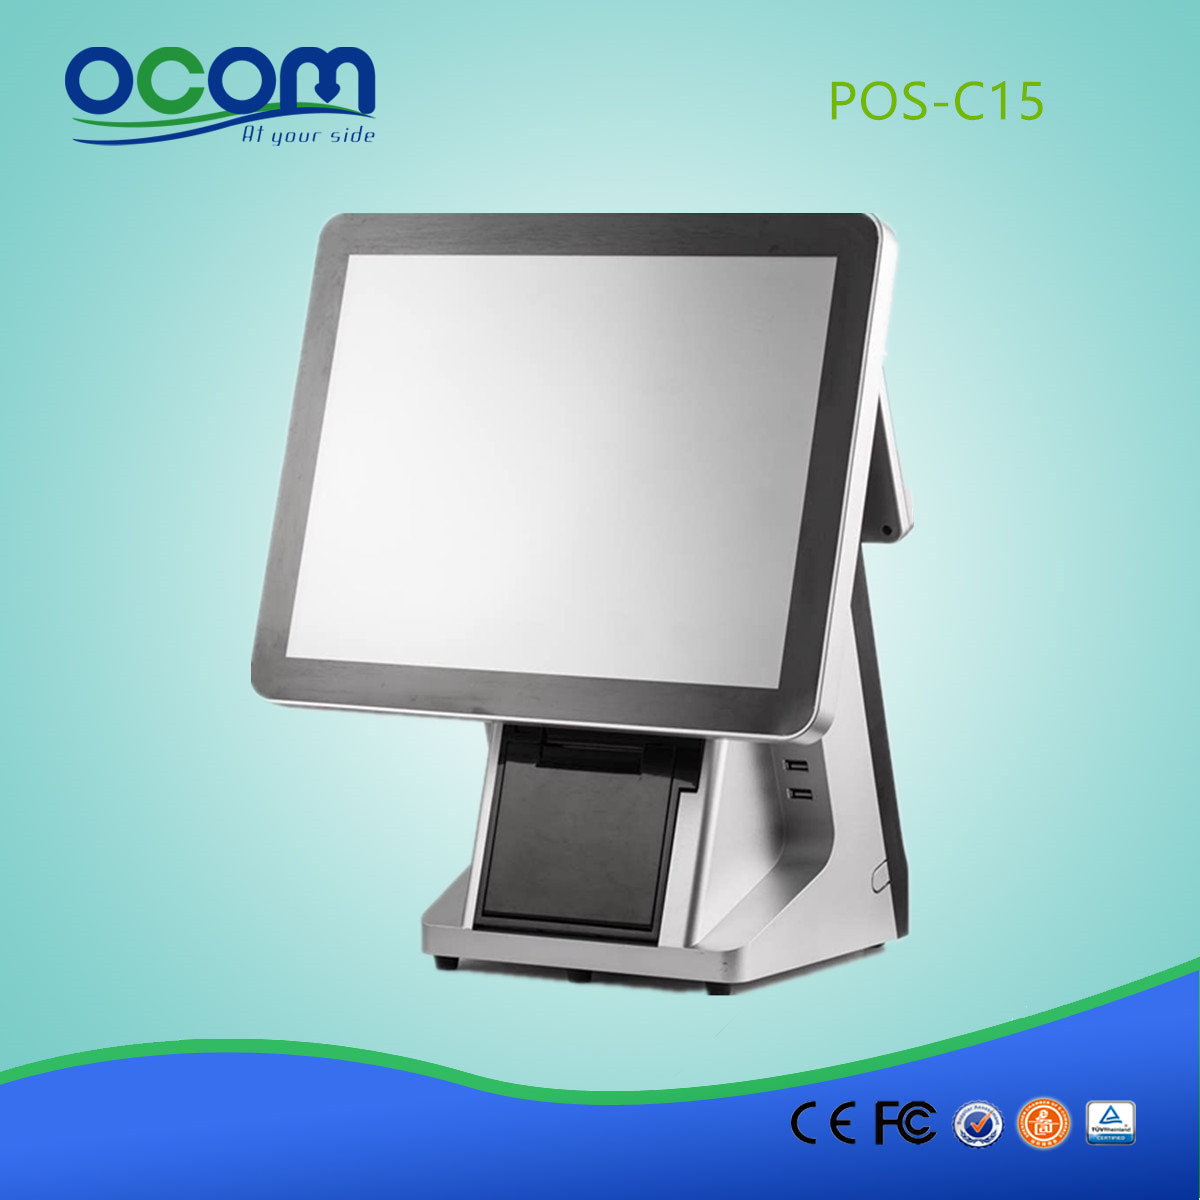 Fabryka POS-C15-China wyprodukowała J1900 32G SSD w jednym 15-calowym terminalu dotykowym